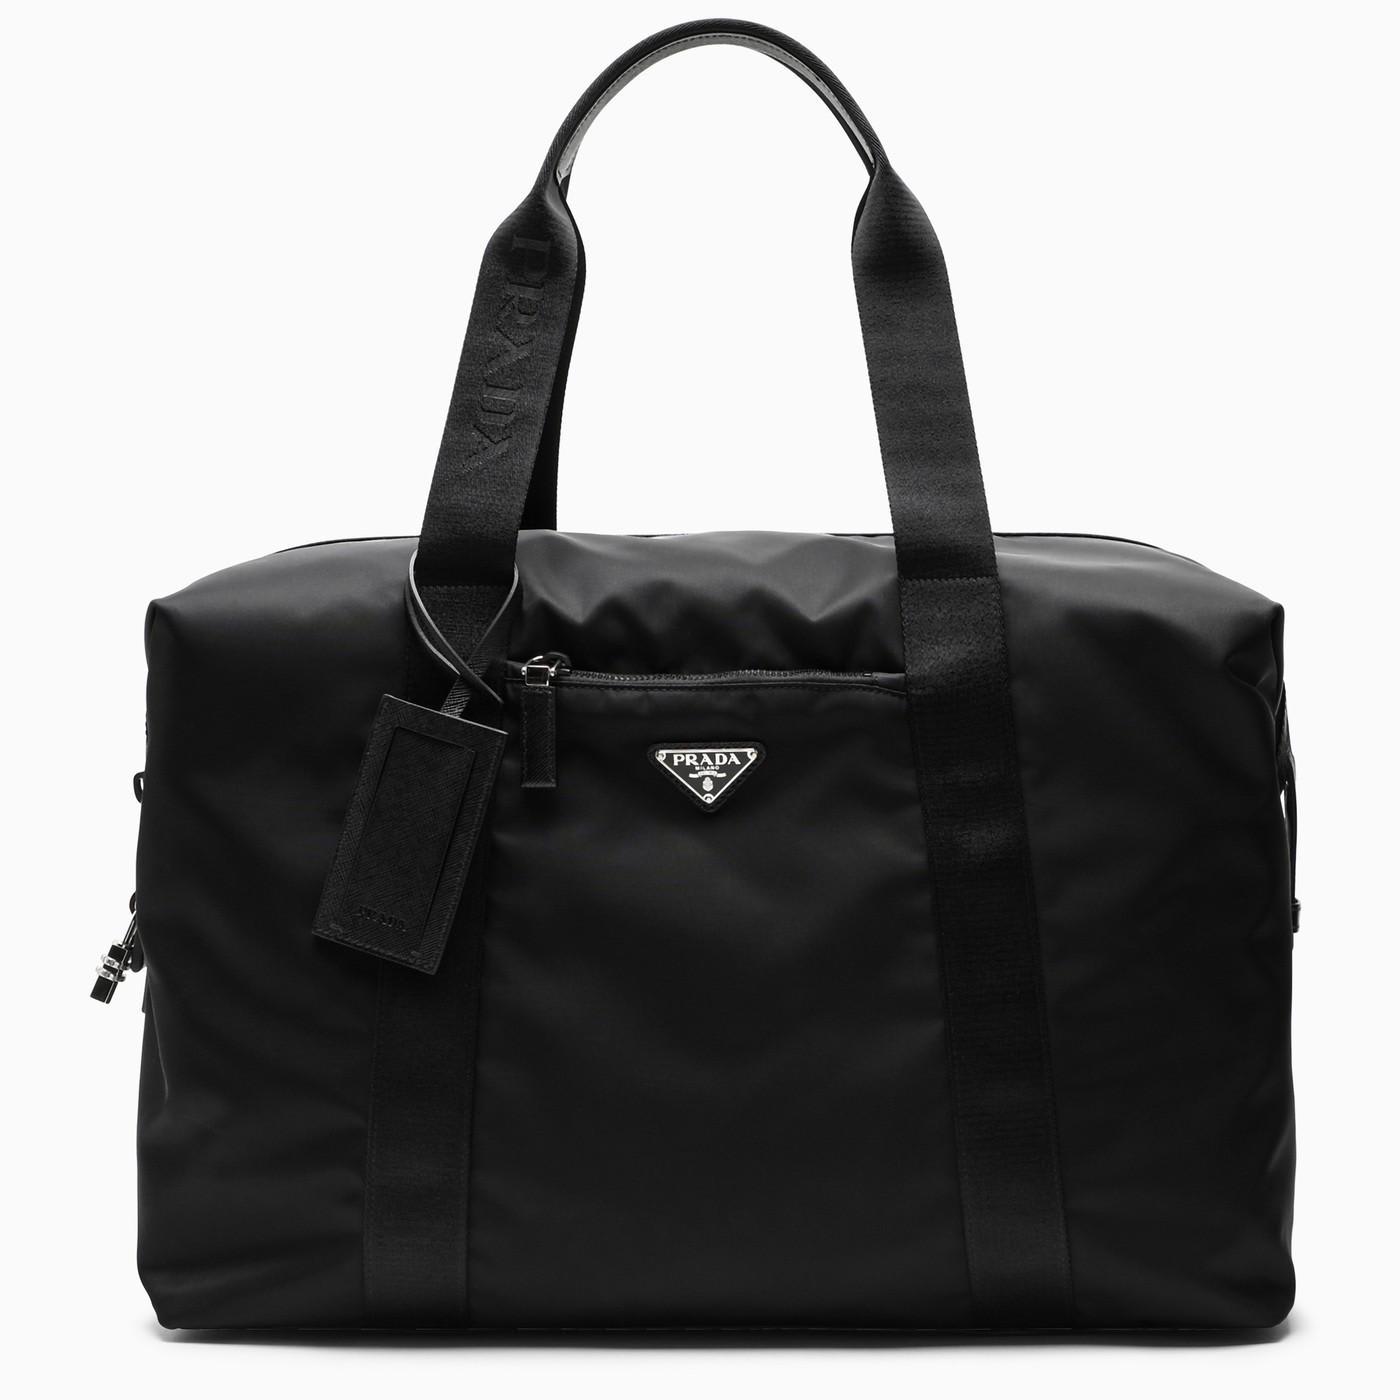 Re-Nylon and Saffiano leather tote bag